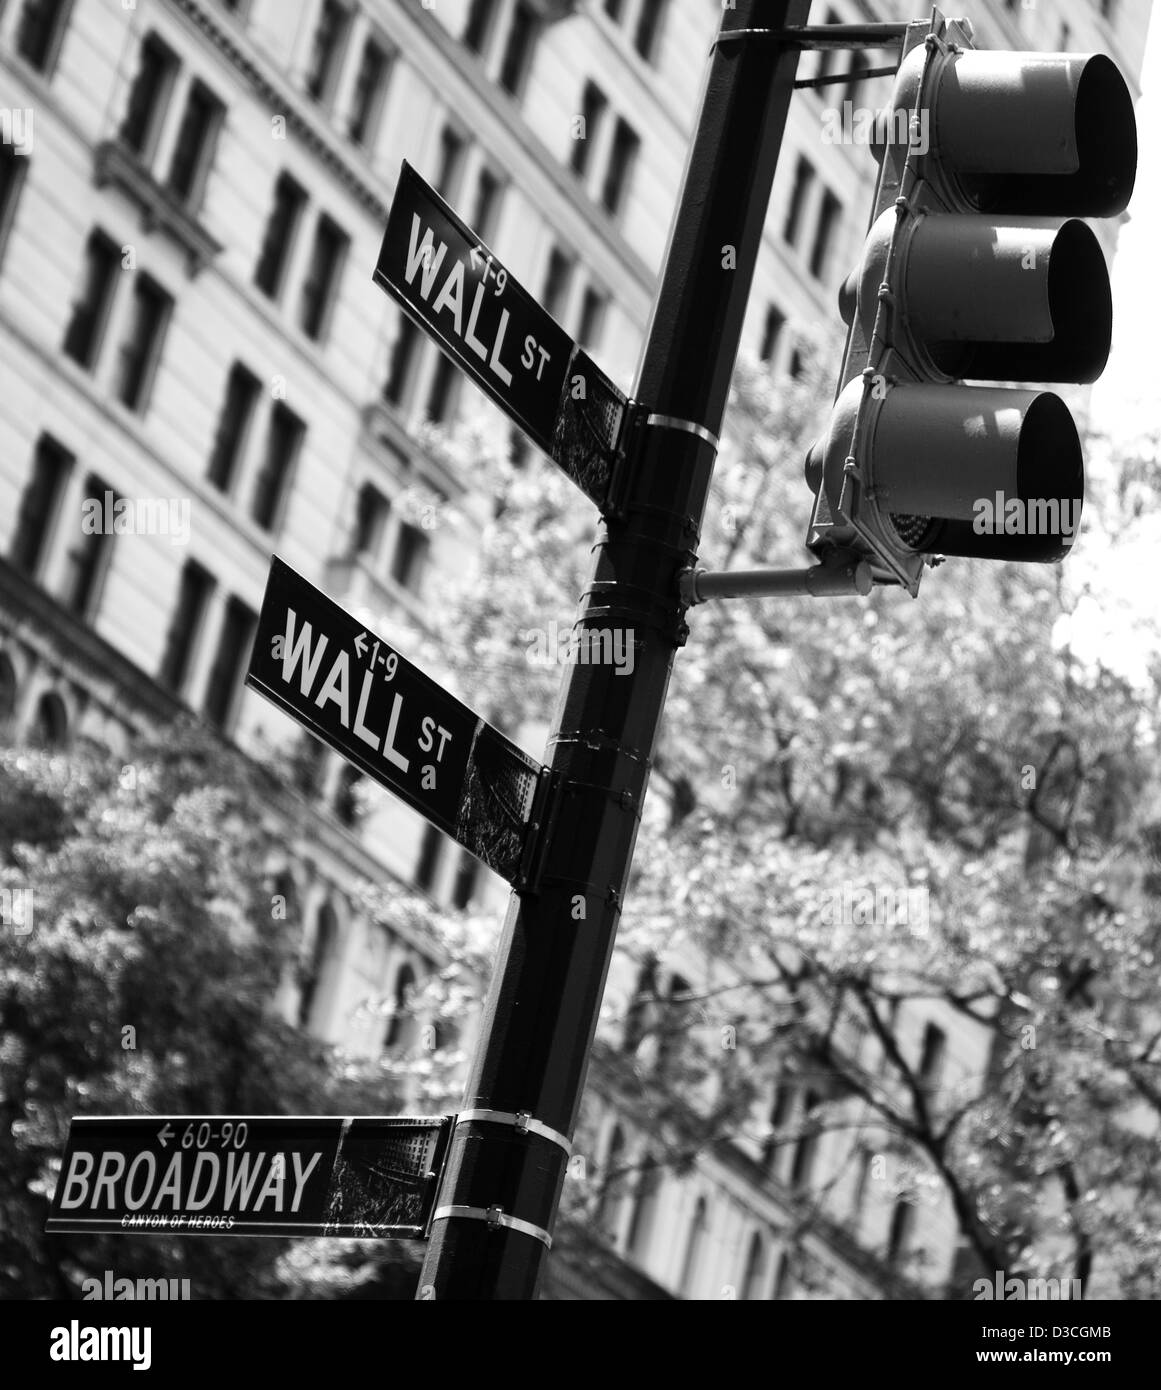 Des plaques de rue sur les feux de circulation, New York, USA Banque D'Images